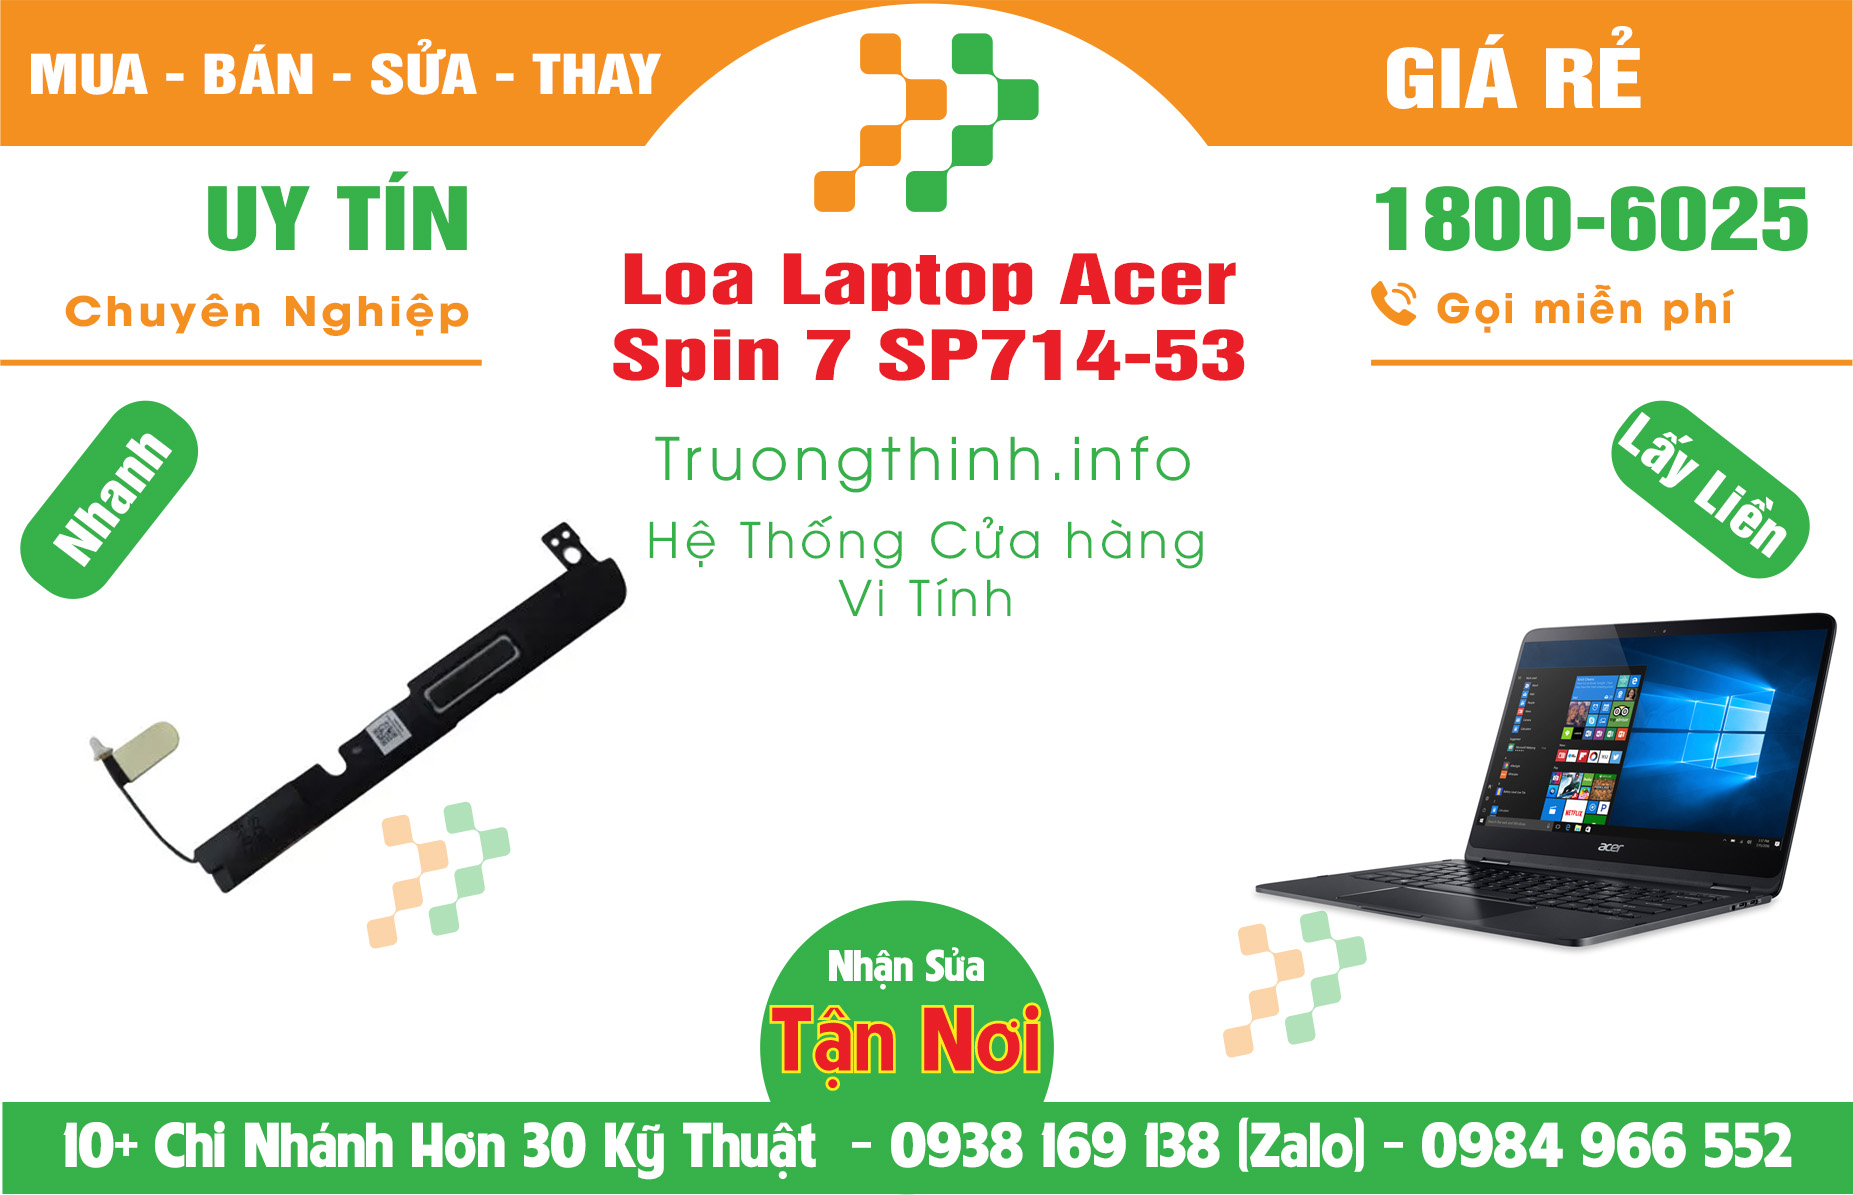 Mua Bán Loa Laptop Acer Spin 7 SP714-53 Giá Rẻ | Máy Tính Trường Thịnh Giá Rẻ